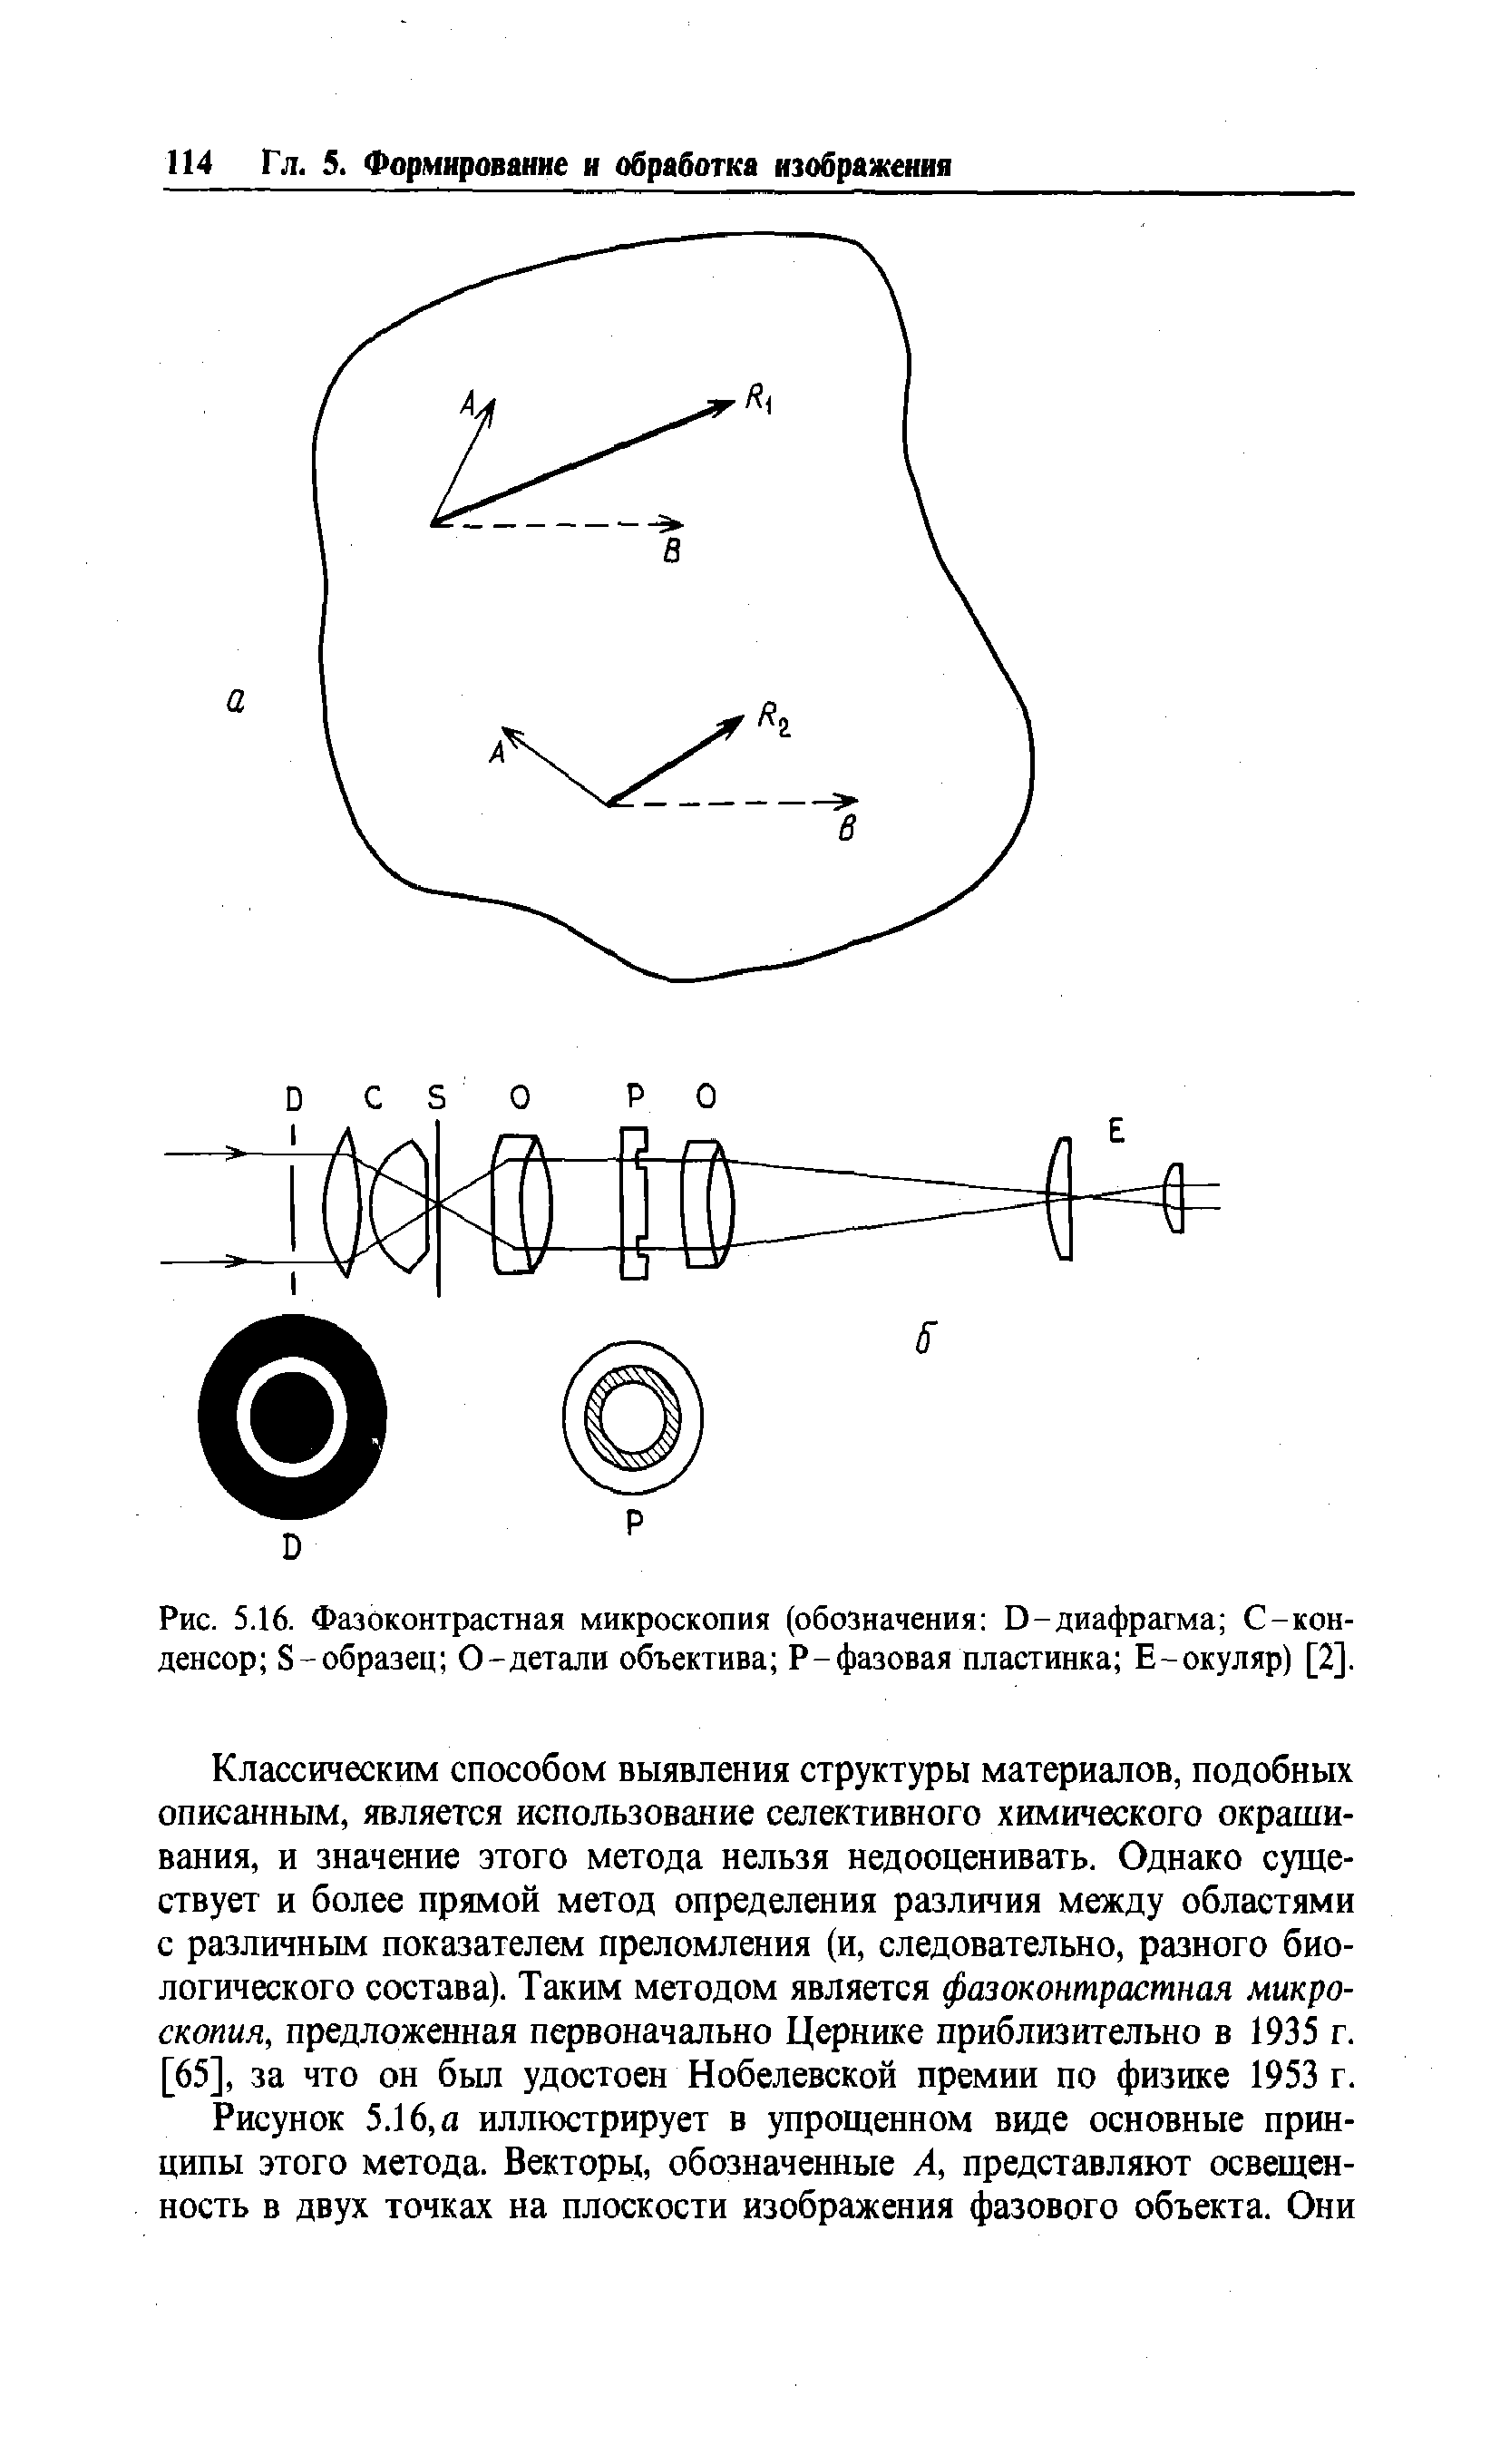 Рис. 5.16. Фазоконтрастная микроскопия (обозначения D-диафрагма С-кон-денсор S-образец 0-детали объектива Р-фазовая пластинка Е-окуляр) [2].
